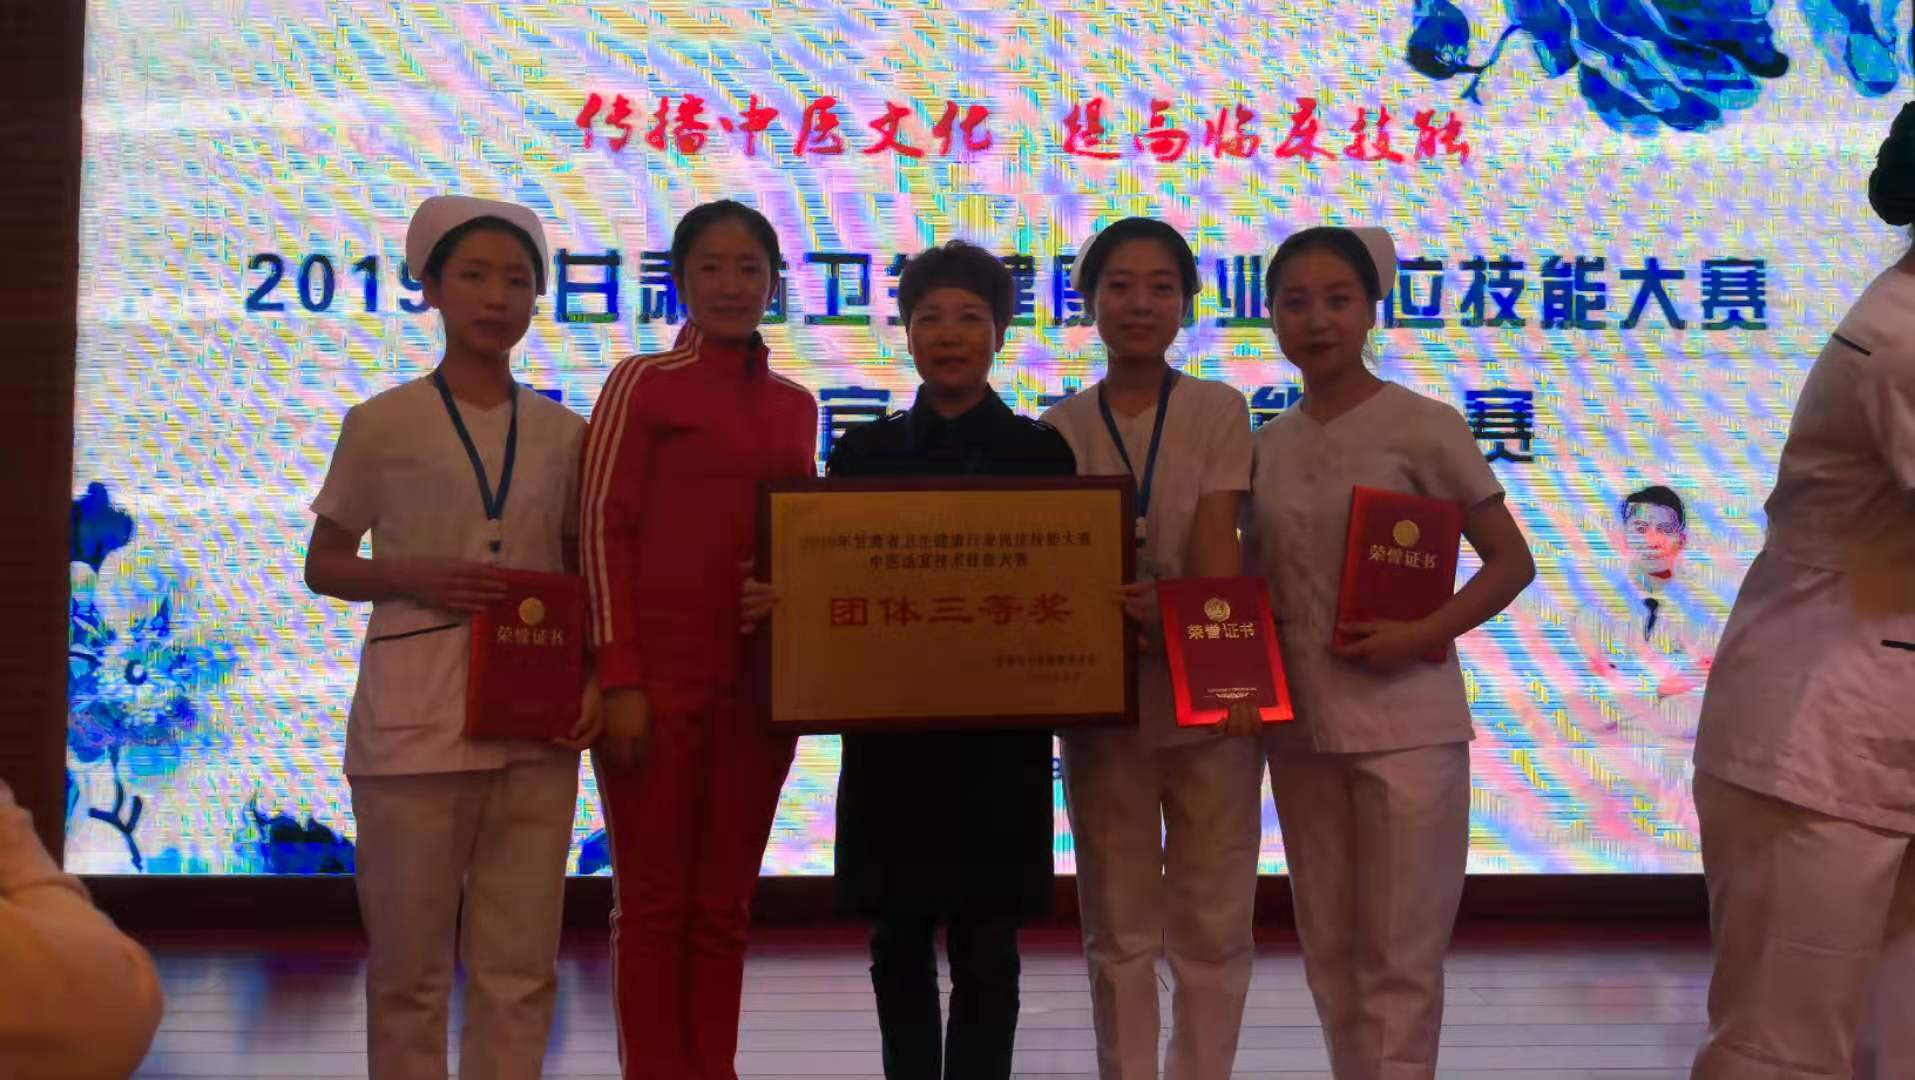 我院参加2019年甘肃省卫生健康行业岗位技能大赛获奖